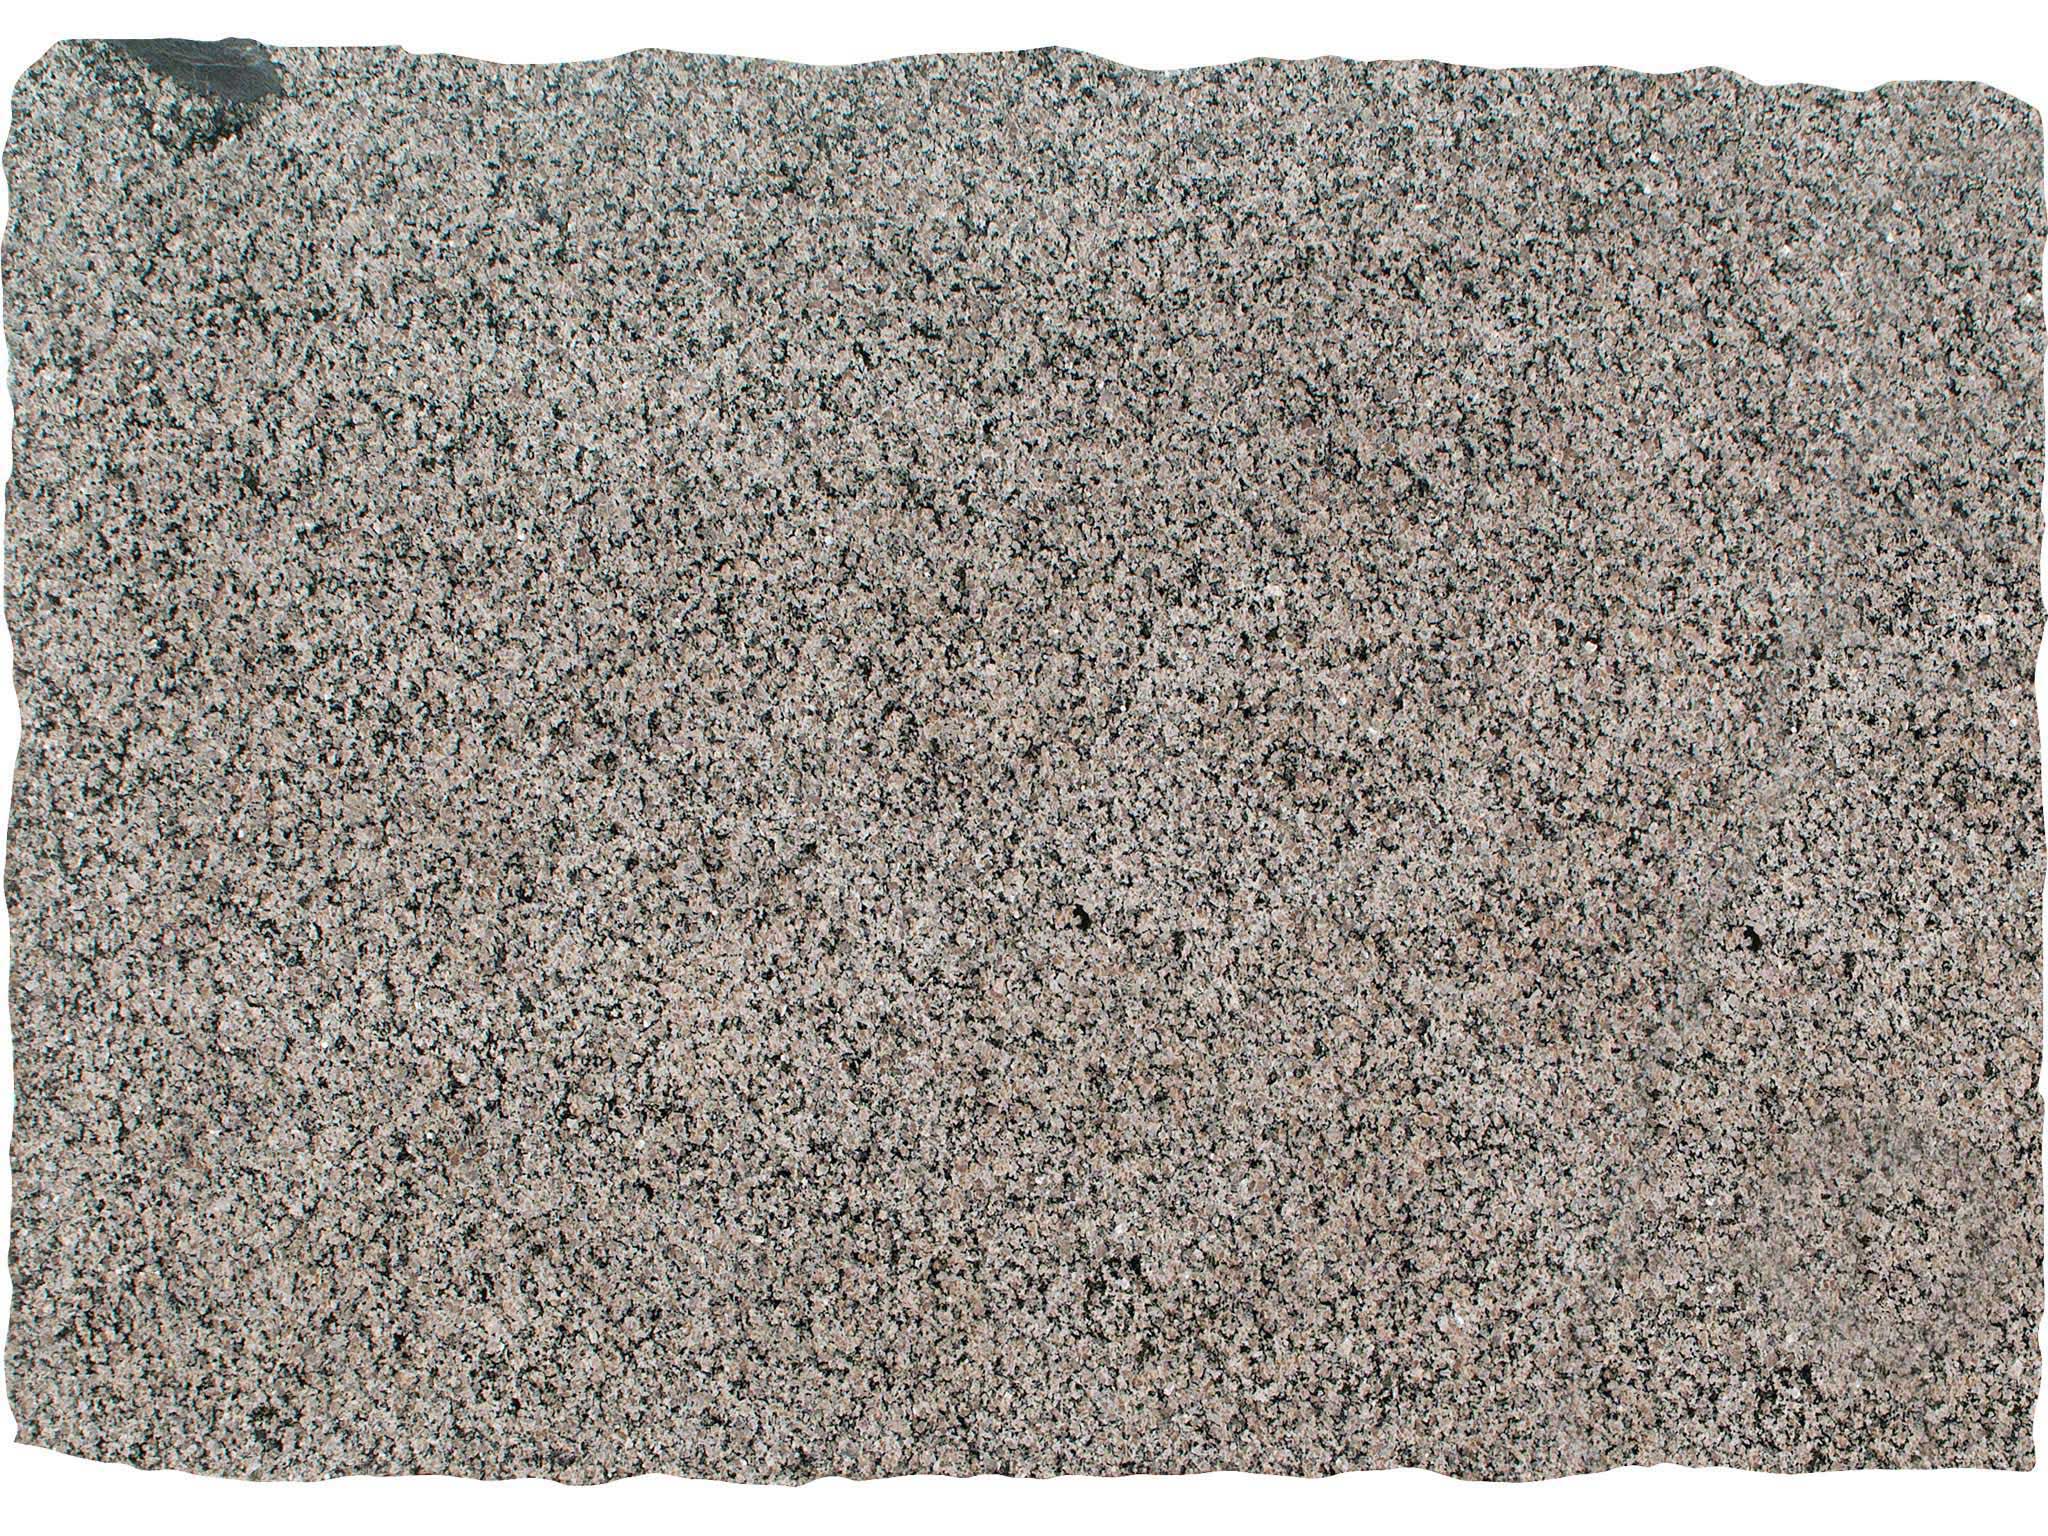 Caledonia Granite Full Slab